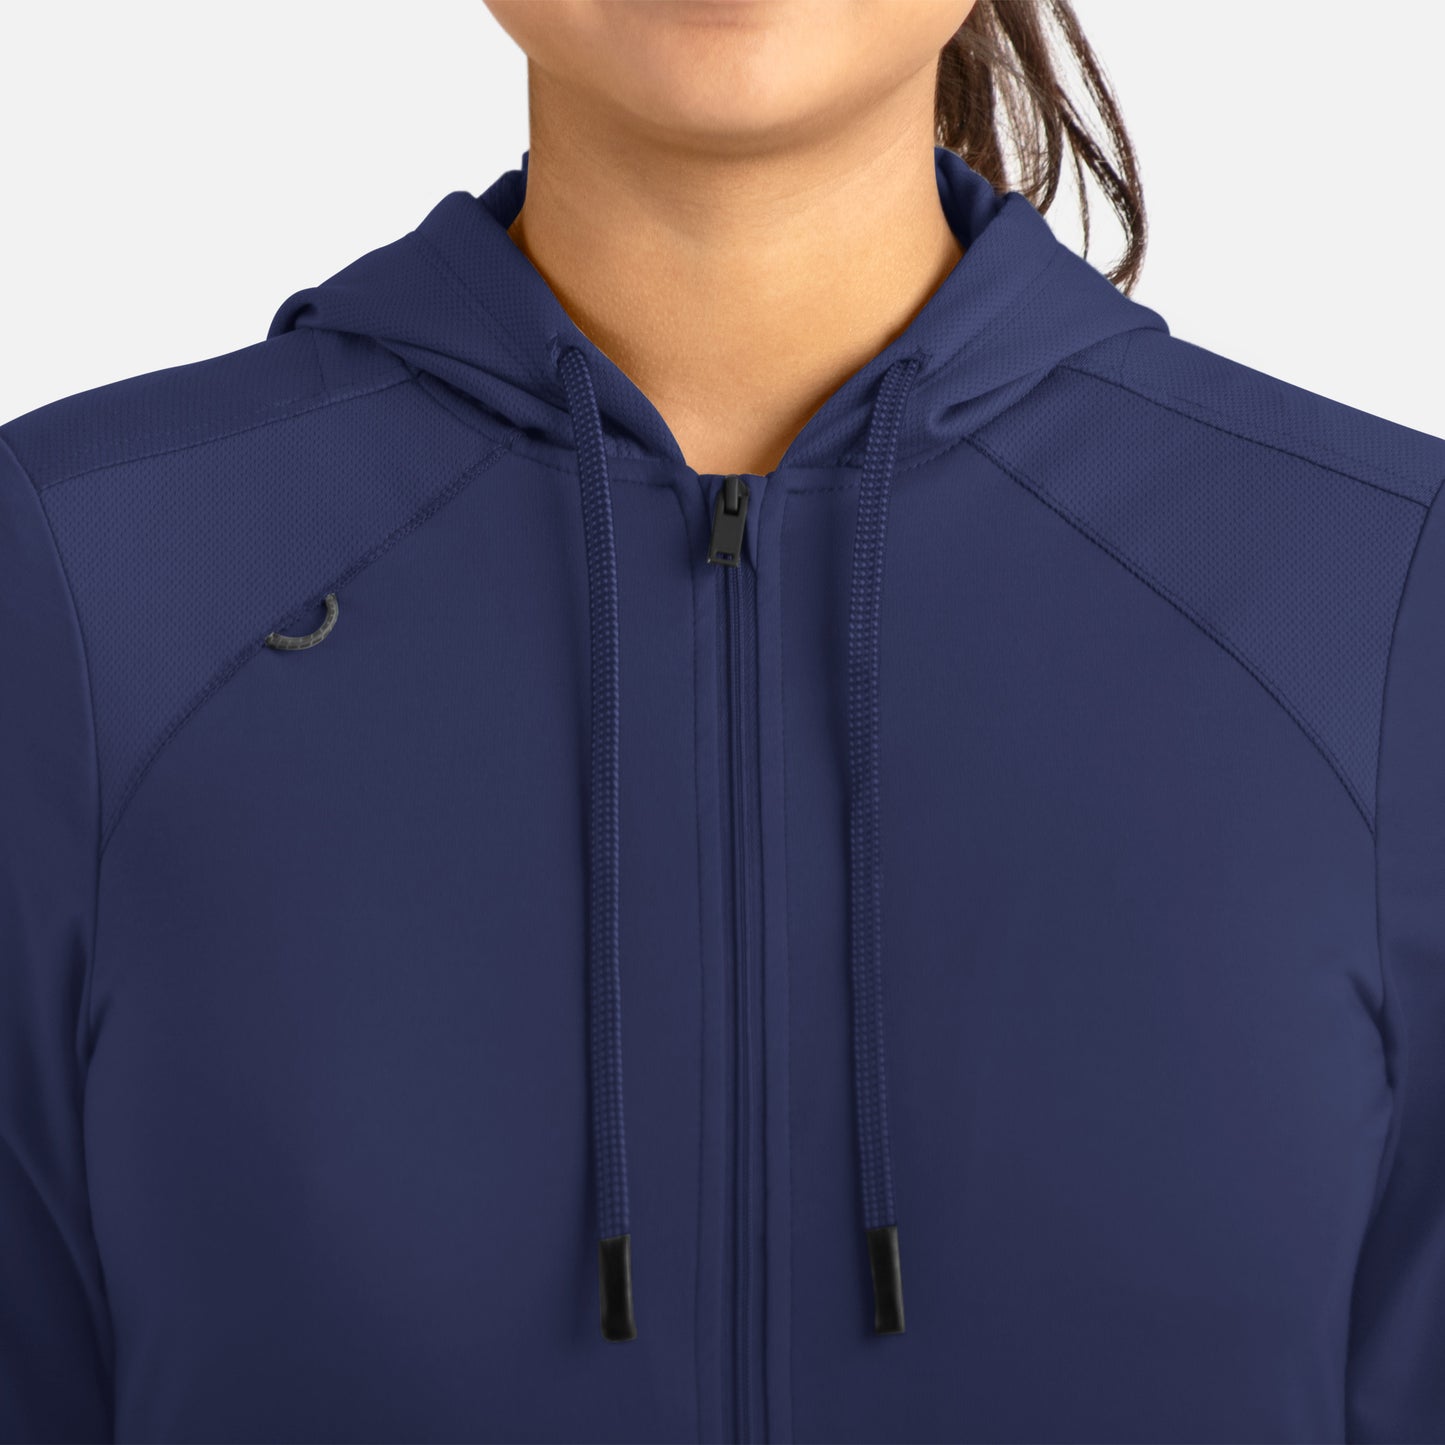 Maevn Focus Women's Hooded Zip Front Jacket